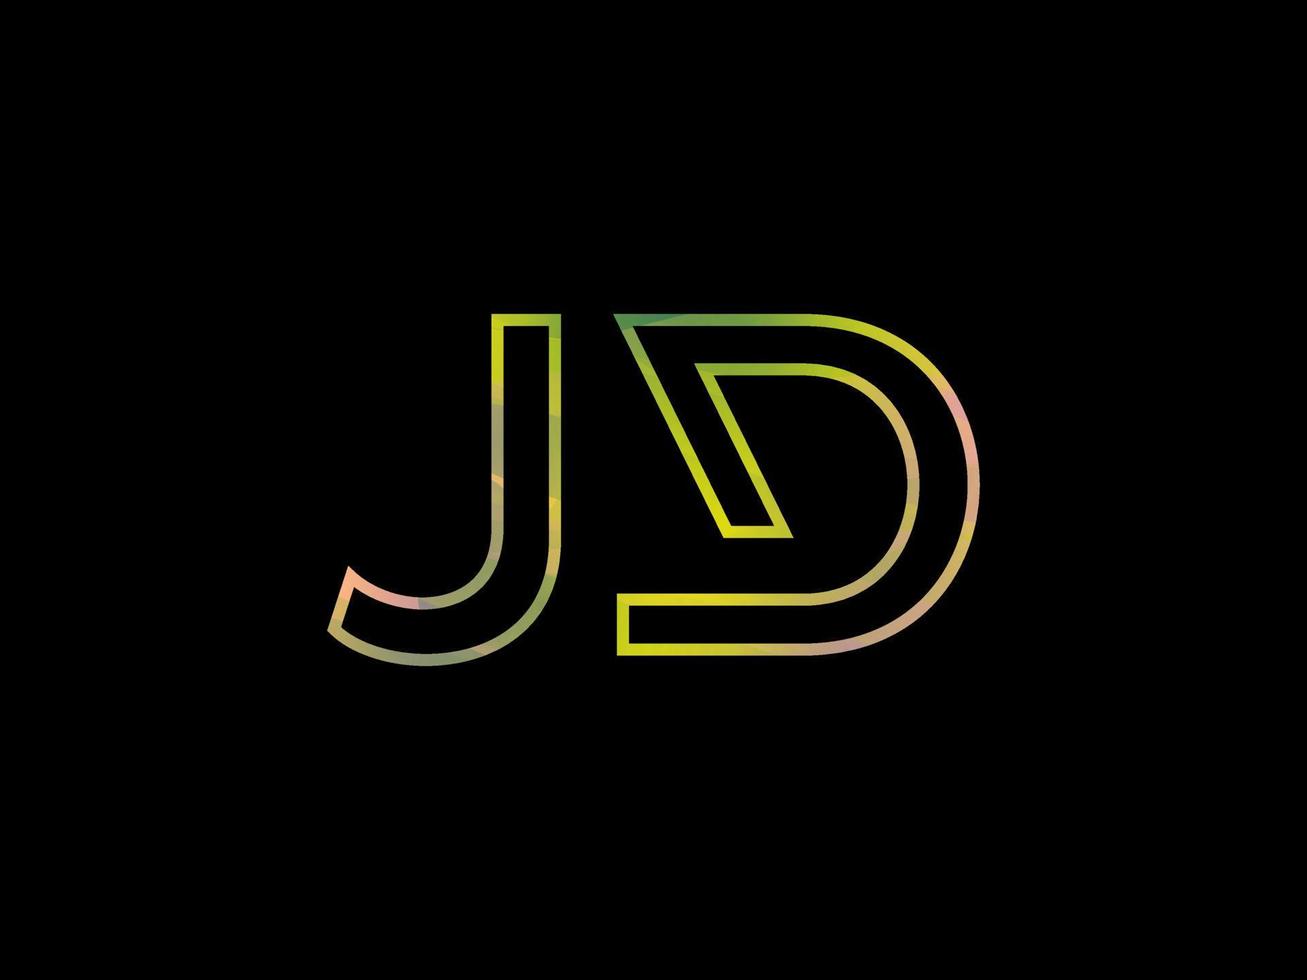 logotipo da letra jd com vetor de textura de arco-íris colorido. vetor profissional.